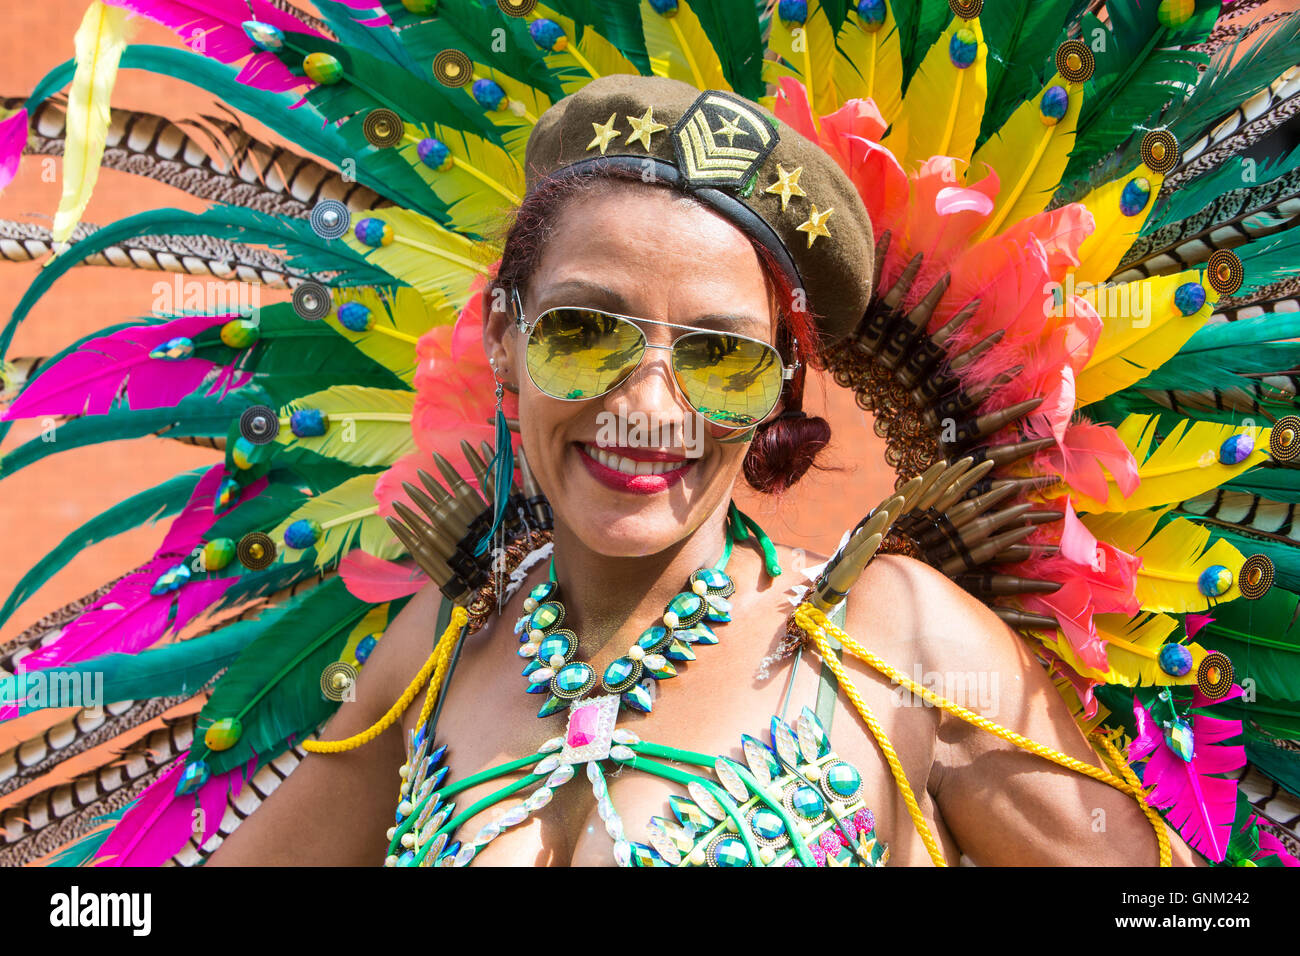 Ein Festival Performer im traditionellen Kostüm paradieren am Karneval von Notting Hill im Westen Londons Stockfoto